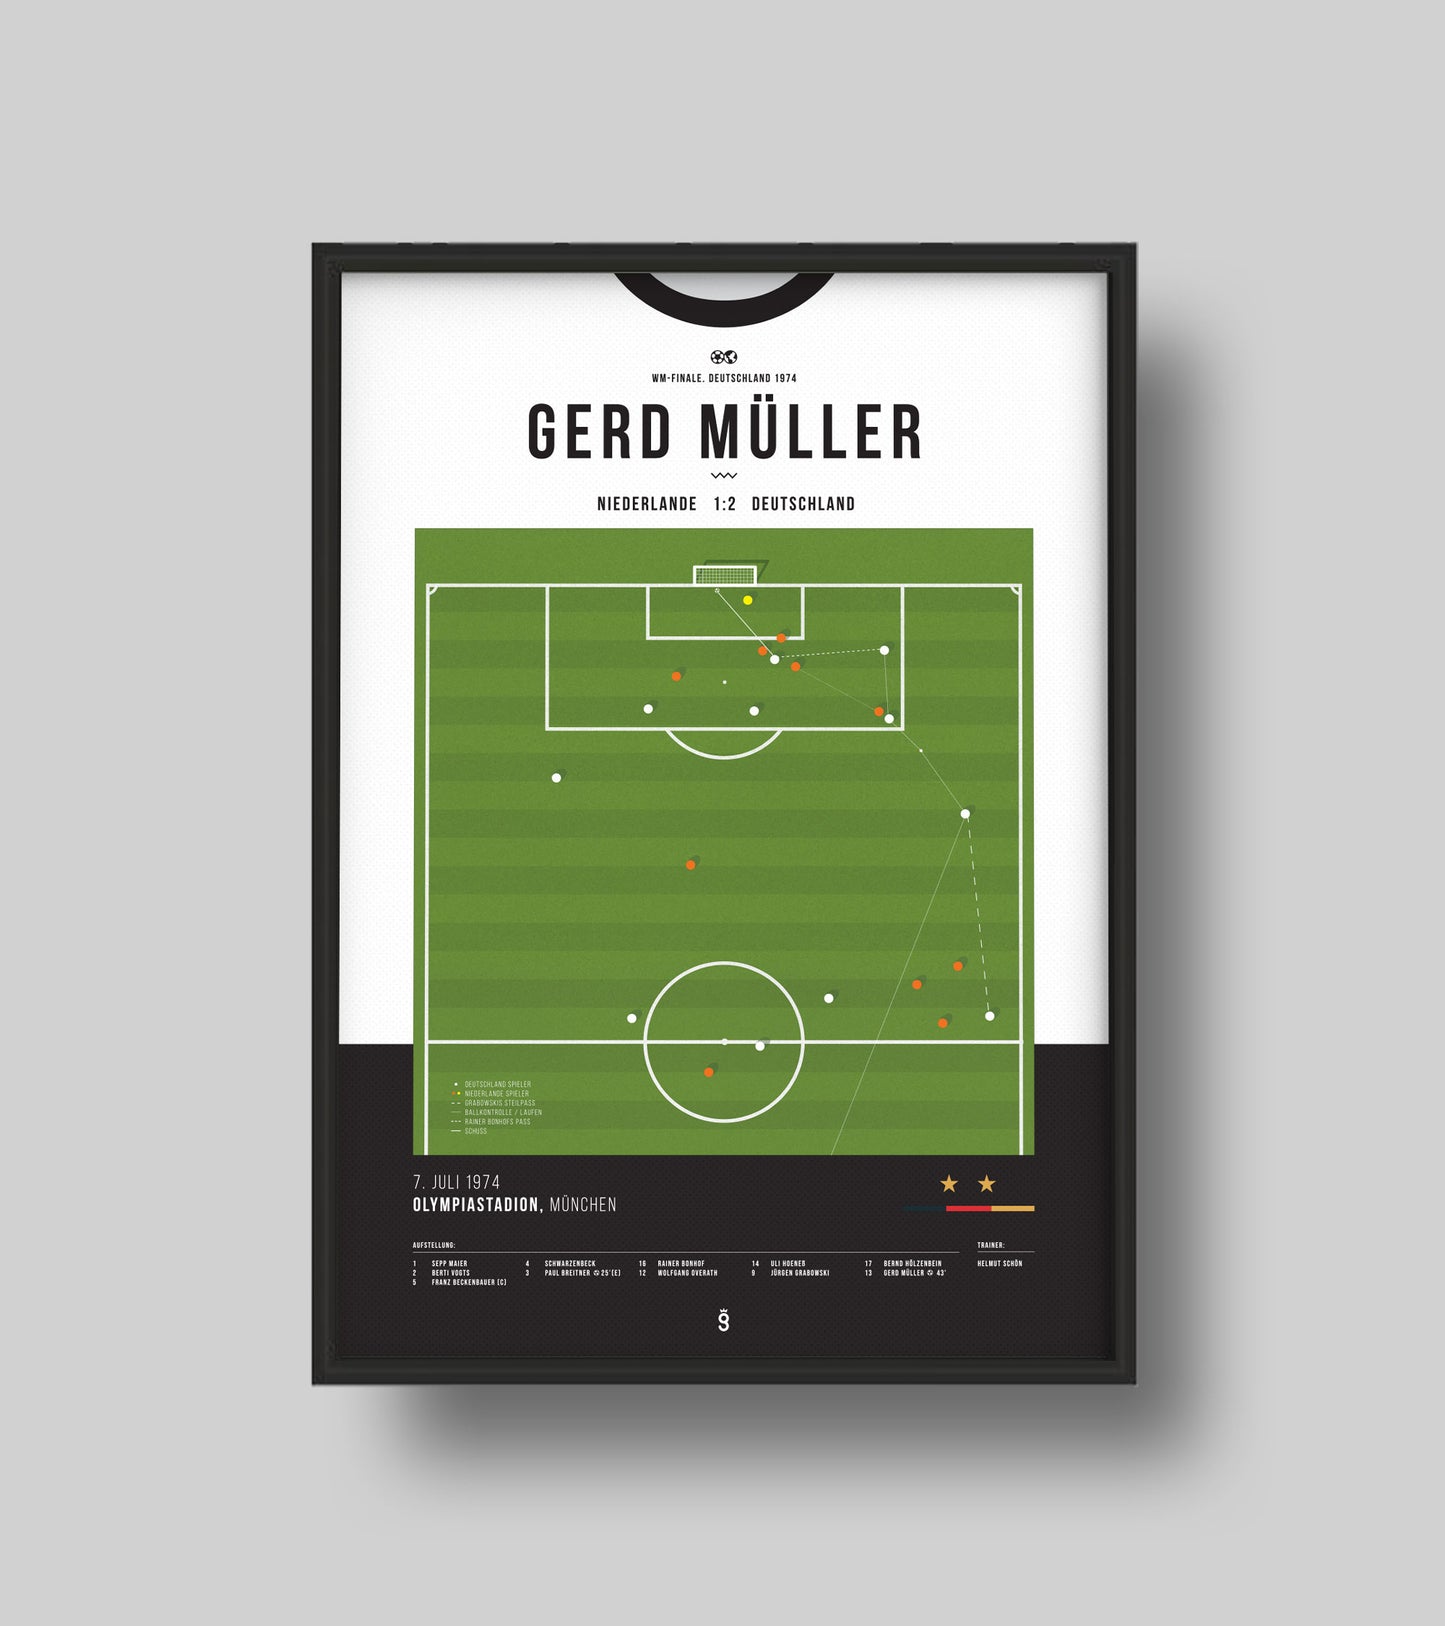 WM 1974: Gerd Müller